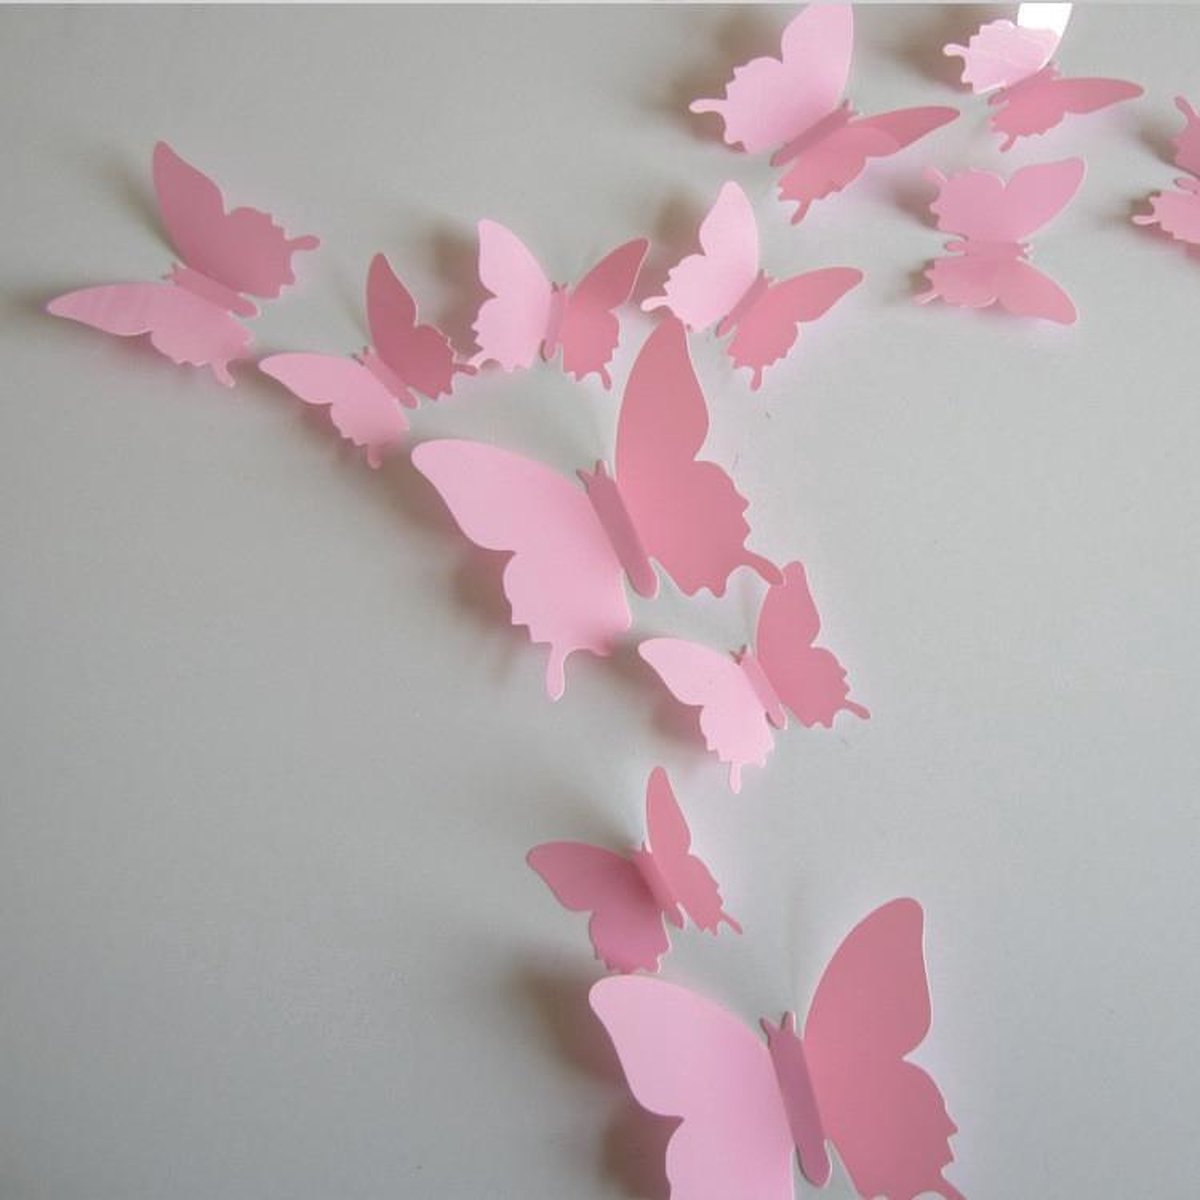 3D Vlinders Rose (12 stuks) - Muursticker Muurdecoratie voor Kinderkamer Babykamer... |